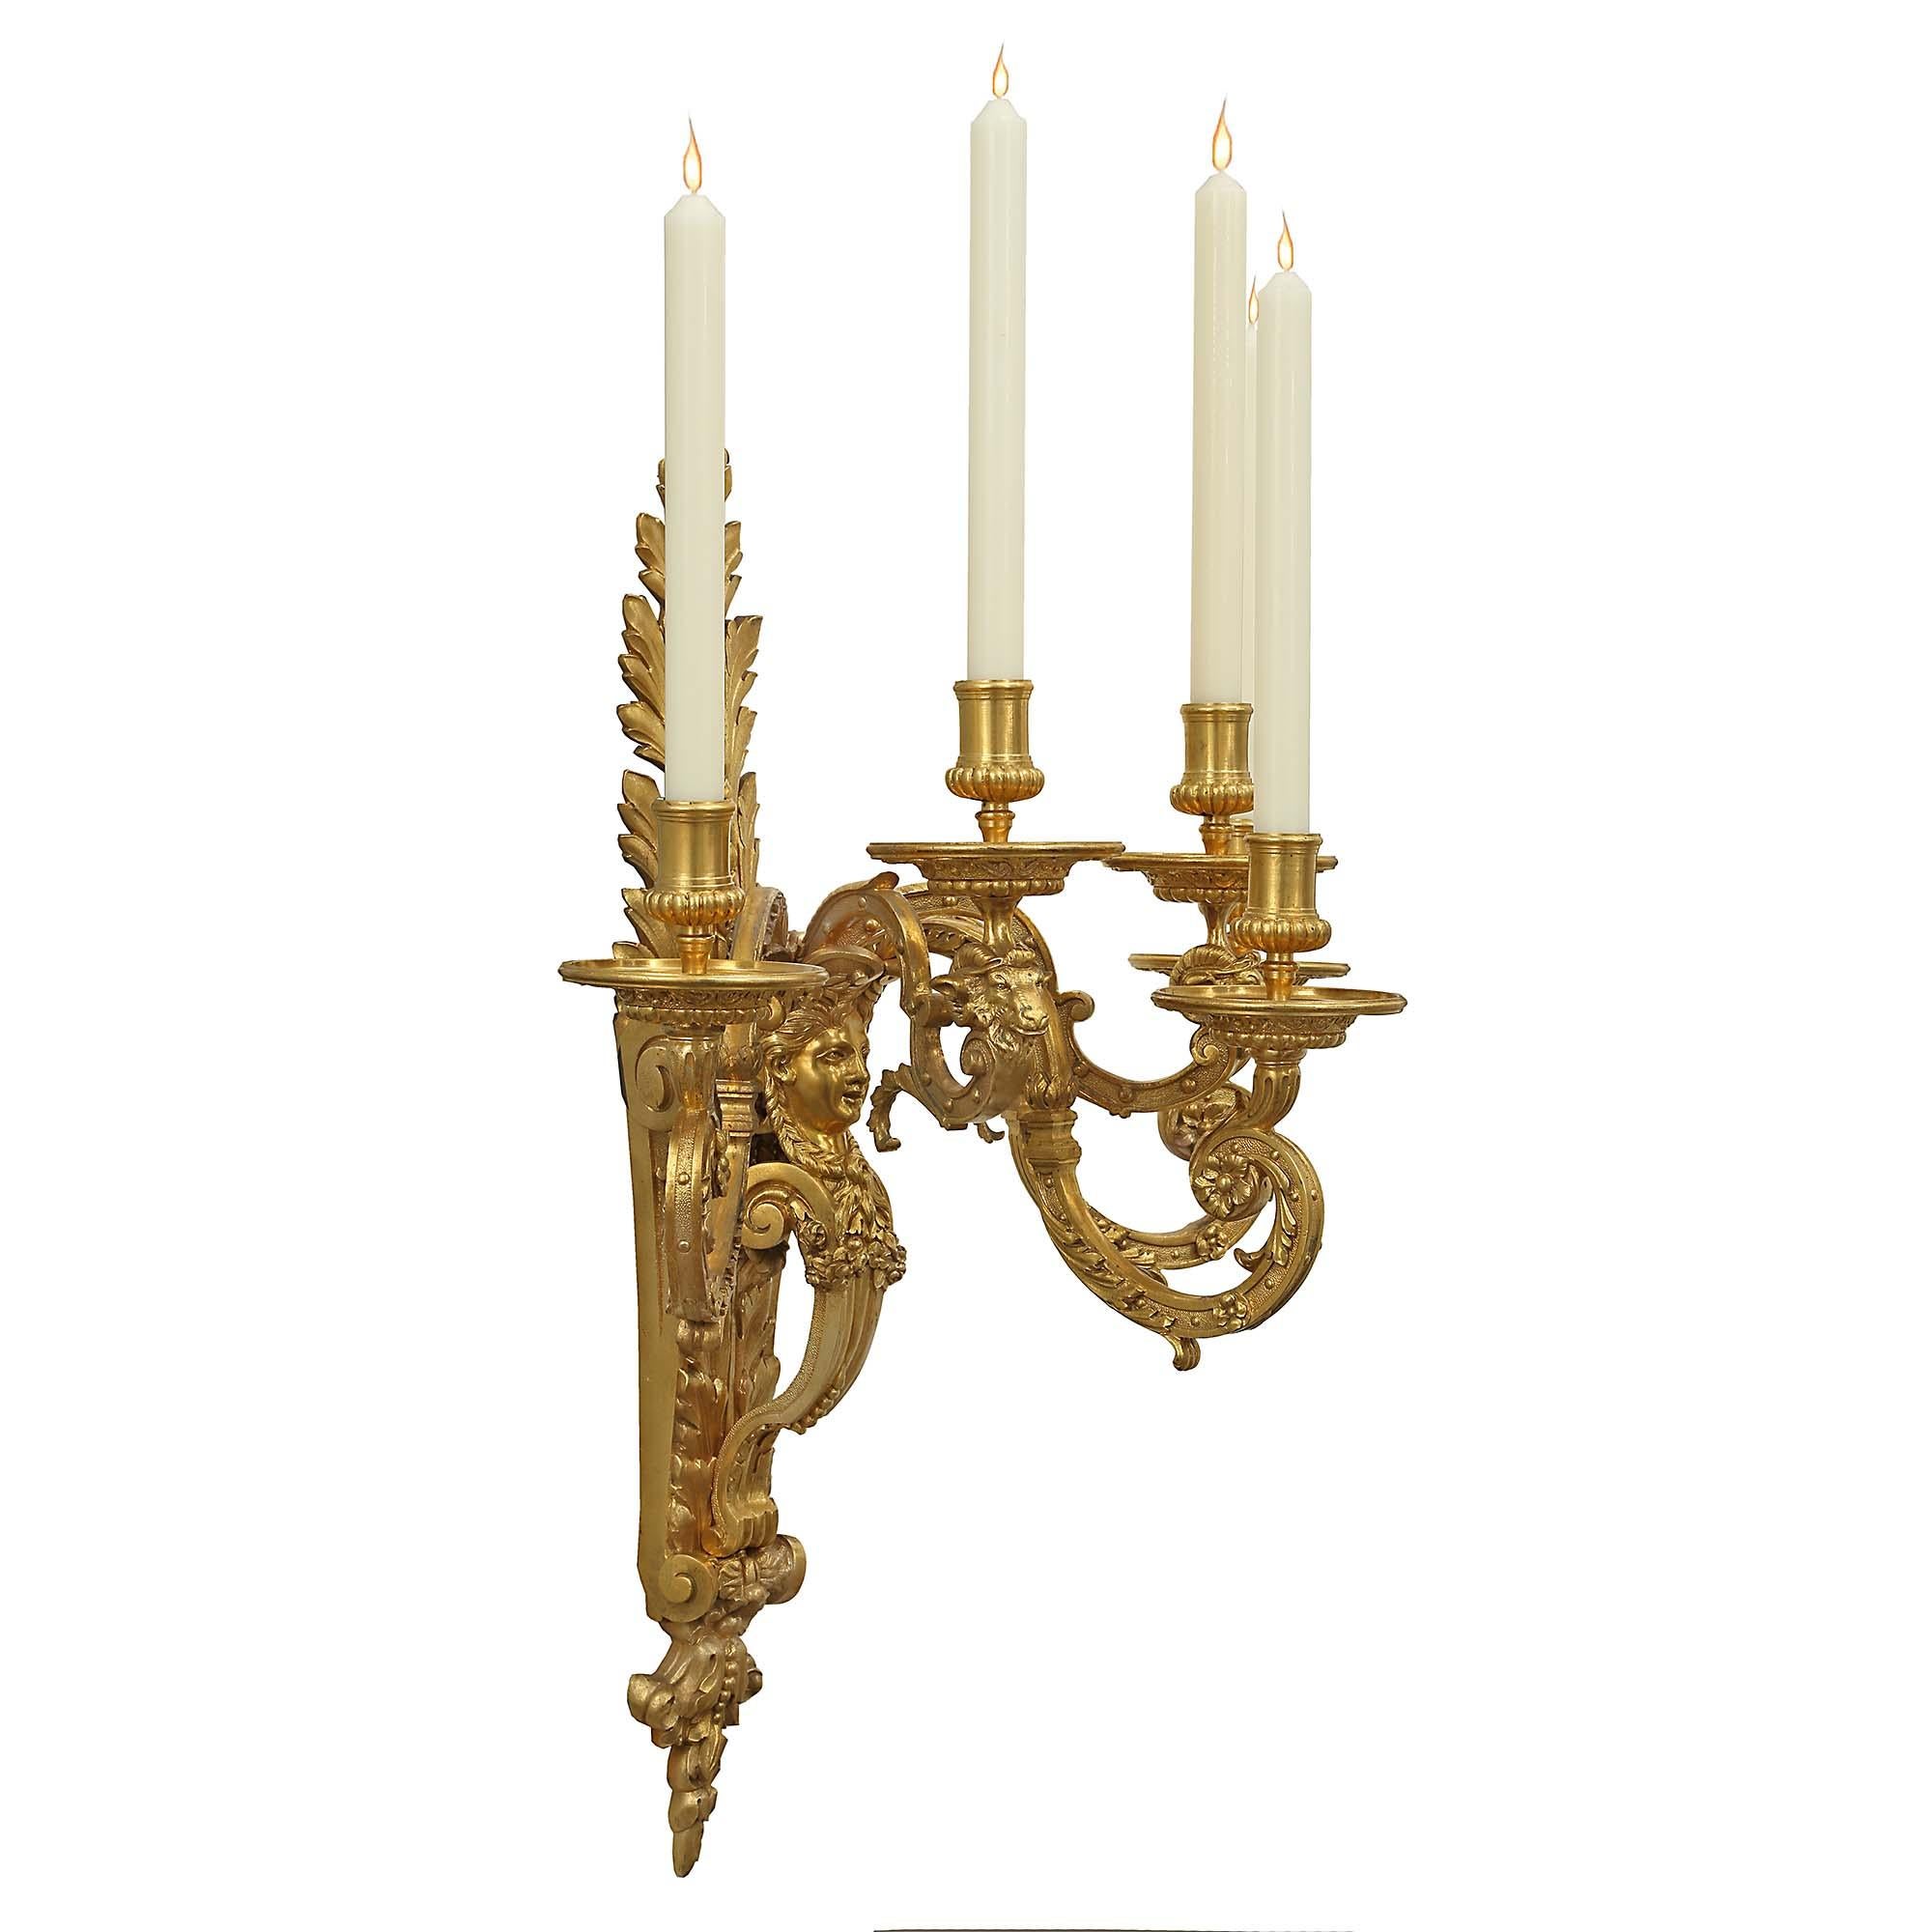 Paire impressionnante d'appliques à cinq bras de lumière en bronze doré de style Louis XIV du milieu du XIXe siècle. La paire richement ciselée et entièrement dorée d'origine présente une plaque arrière décorée de grandes feuilles d'acanthe et d'une